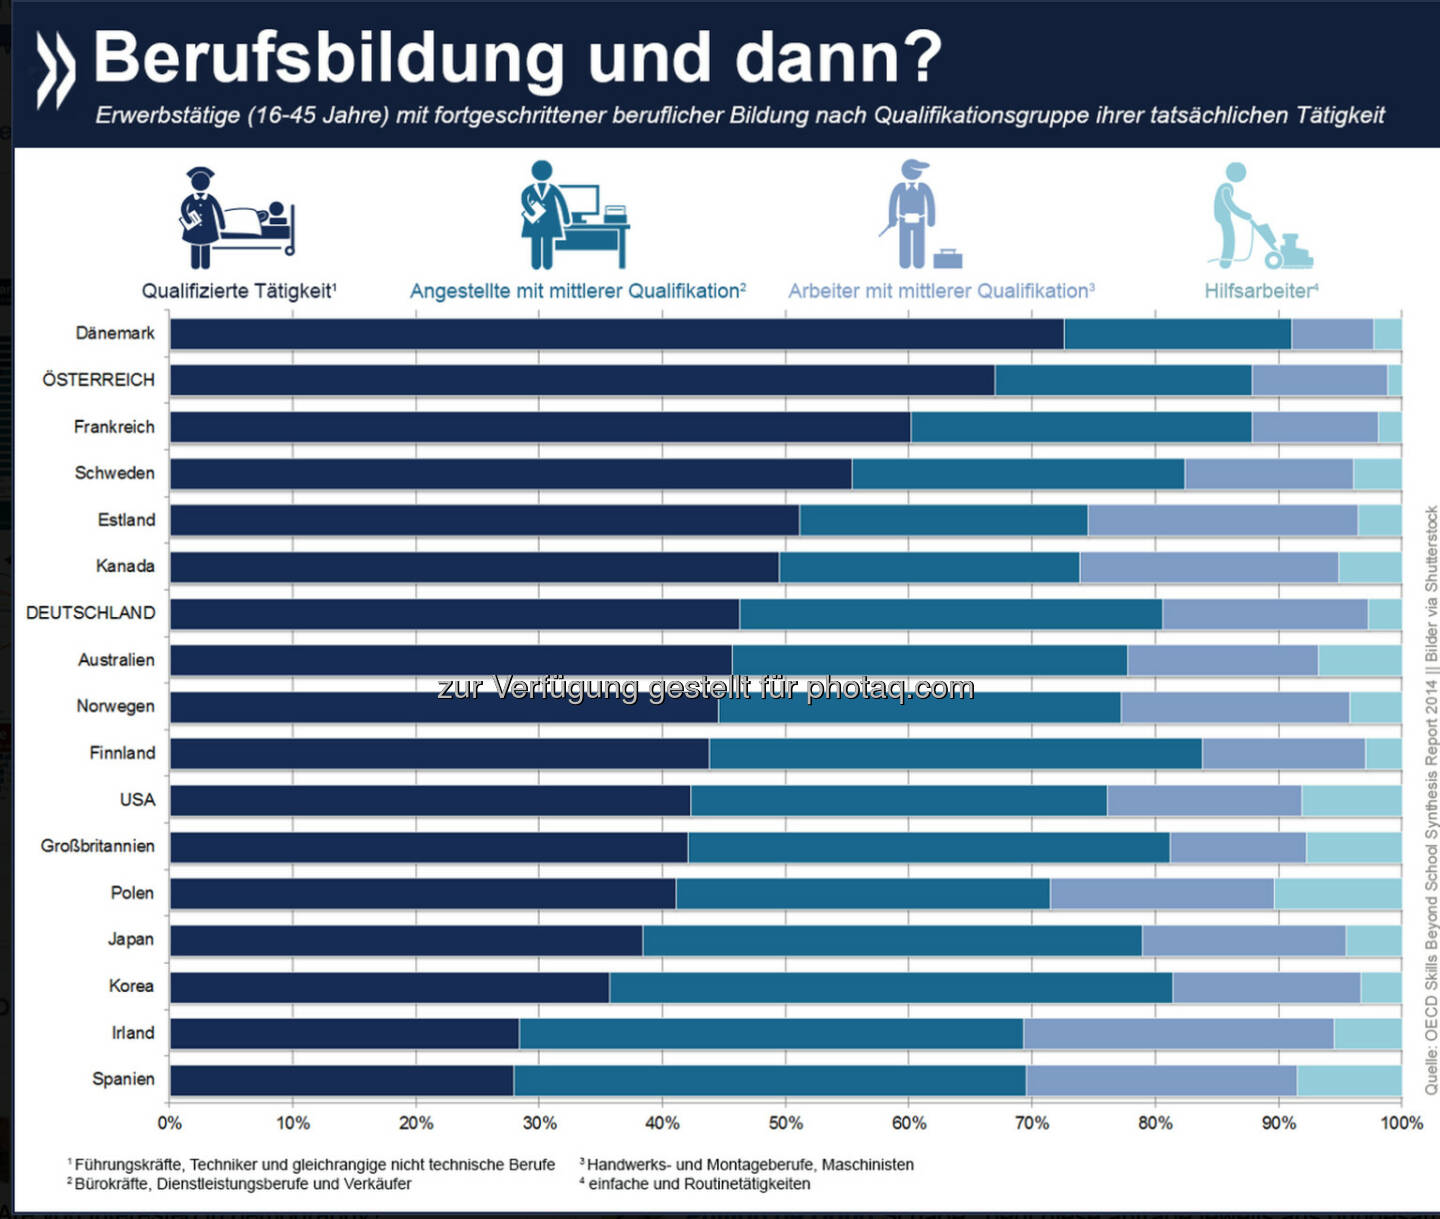 Karrieremotor Berufsbildung? In Österreich arbeiten zwei Drittel der Erwerbstätigen mit fortgeschrittener Berufsbildung (postsekundar) in qualifizierten Tätigkeiten, etwa im medizinischen oder technischen Sektor. Noch erfolgversprechender ist berufliche Aus- und Weiterbildung nur in Dänemark (73%). 

Mehr Informationen zu fortgeschrittener Berufsbildung in OECD-Ländern gibt es unter: http://bit.ly/1wWw4Wv (S. 65 f.)